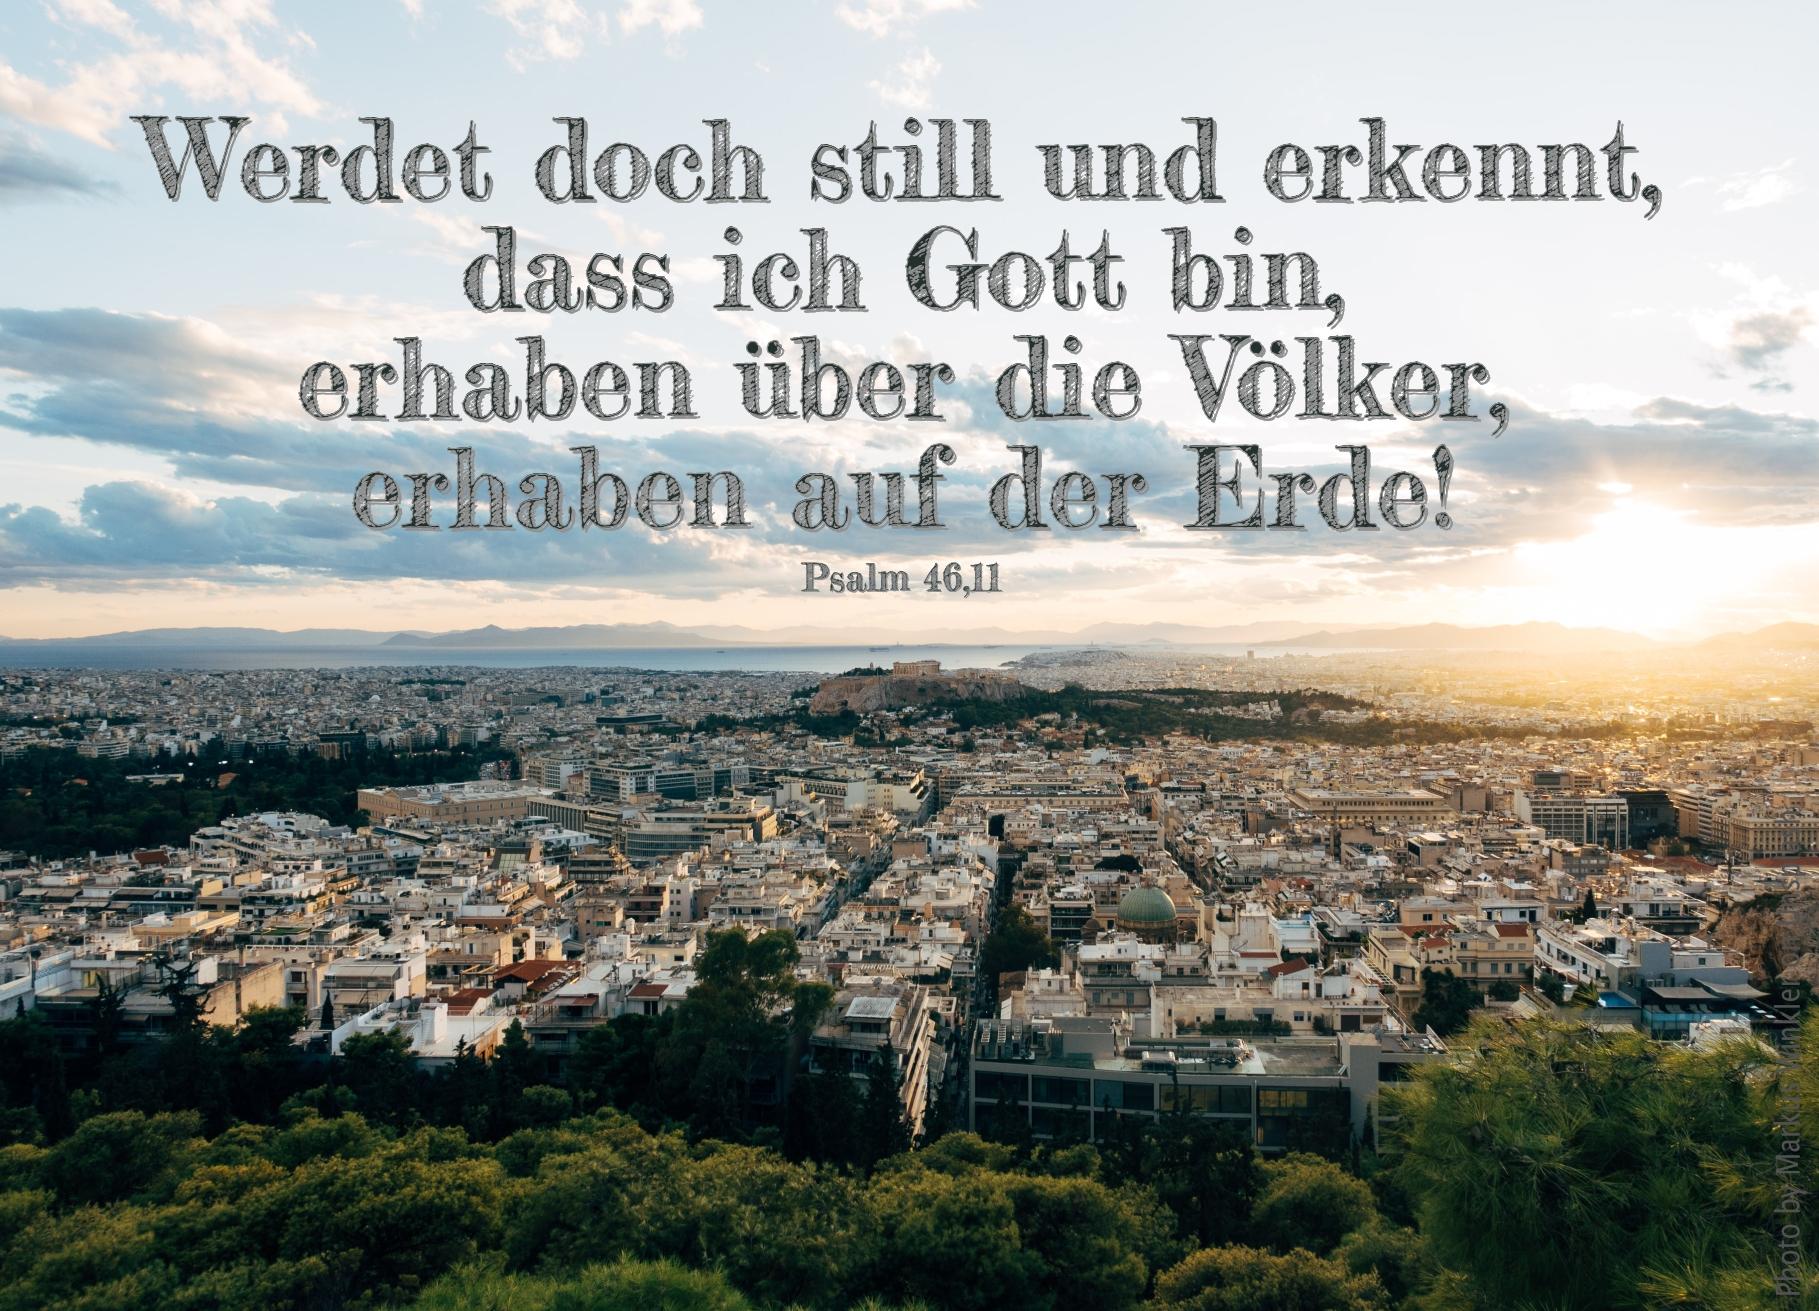 alt="Stadt_im_Sonnenaufgang_erwartet_bibelhoerbuch_geluebde"